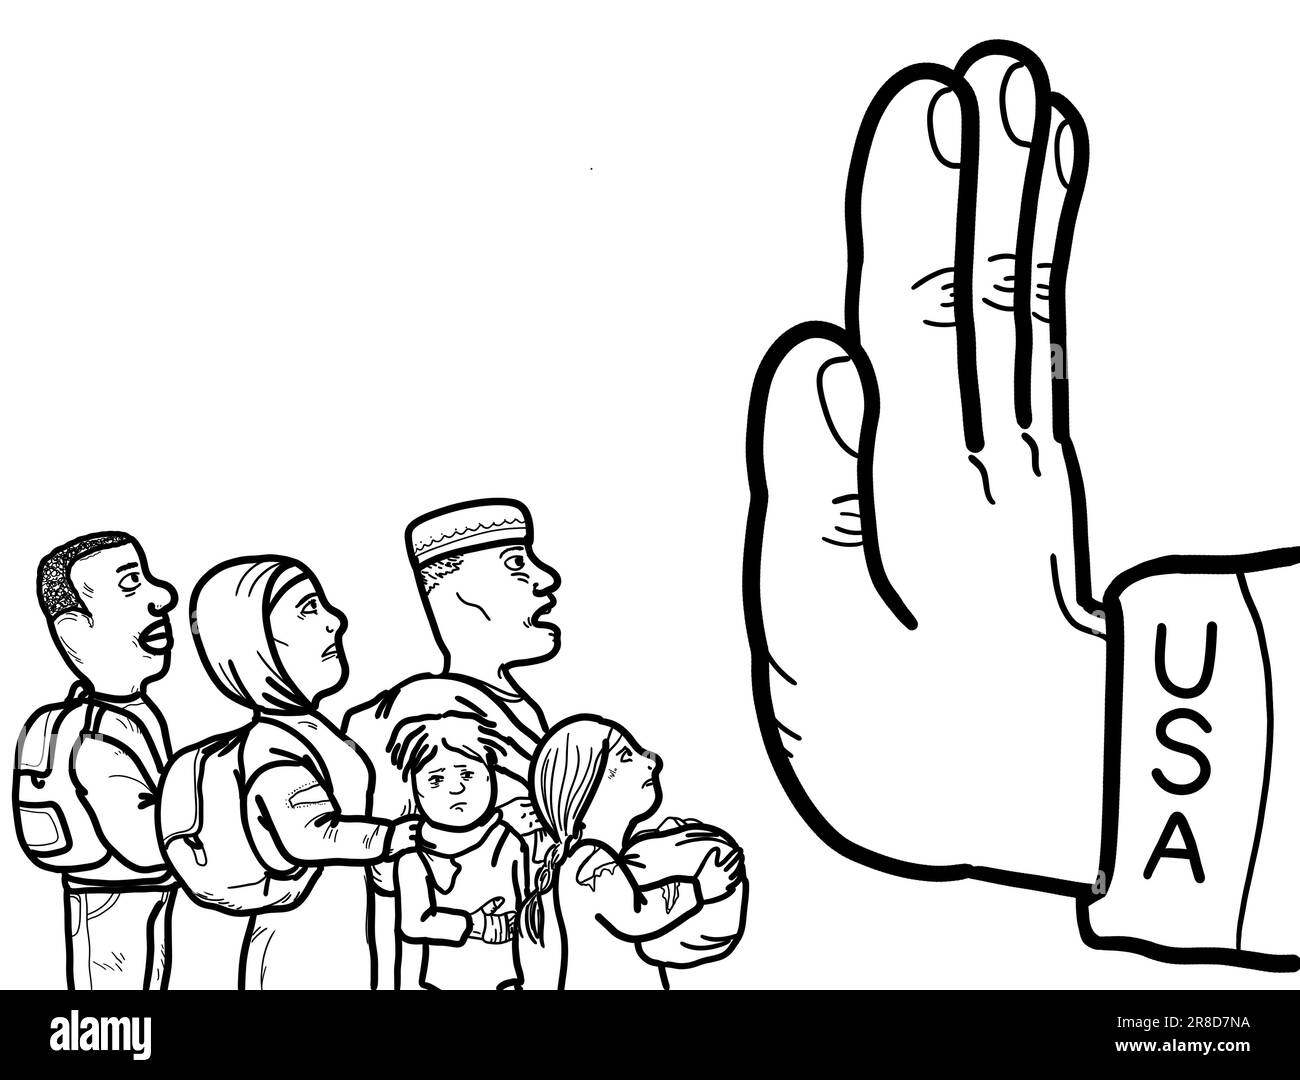 Eine Hand symbolisiert die Verhinderung der illegalen Einwanderung, der Einreise von Flüchtlingen und Asylbewerbern in das Land. Stockfoto